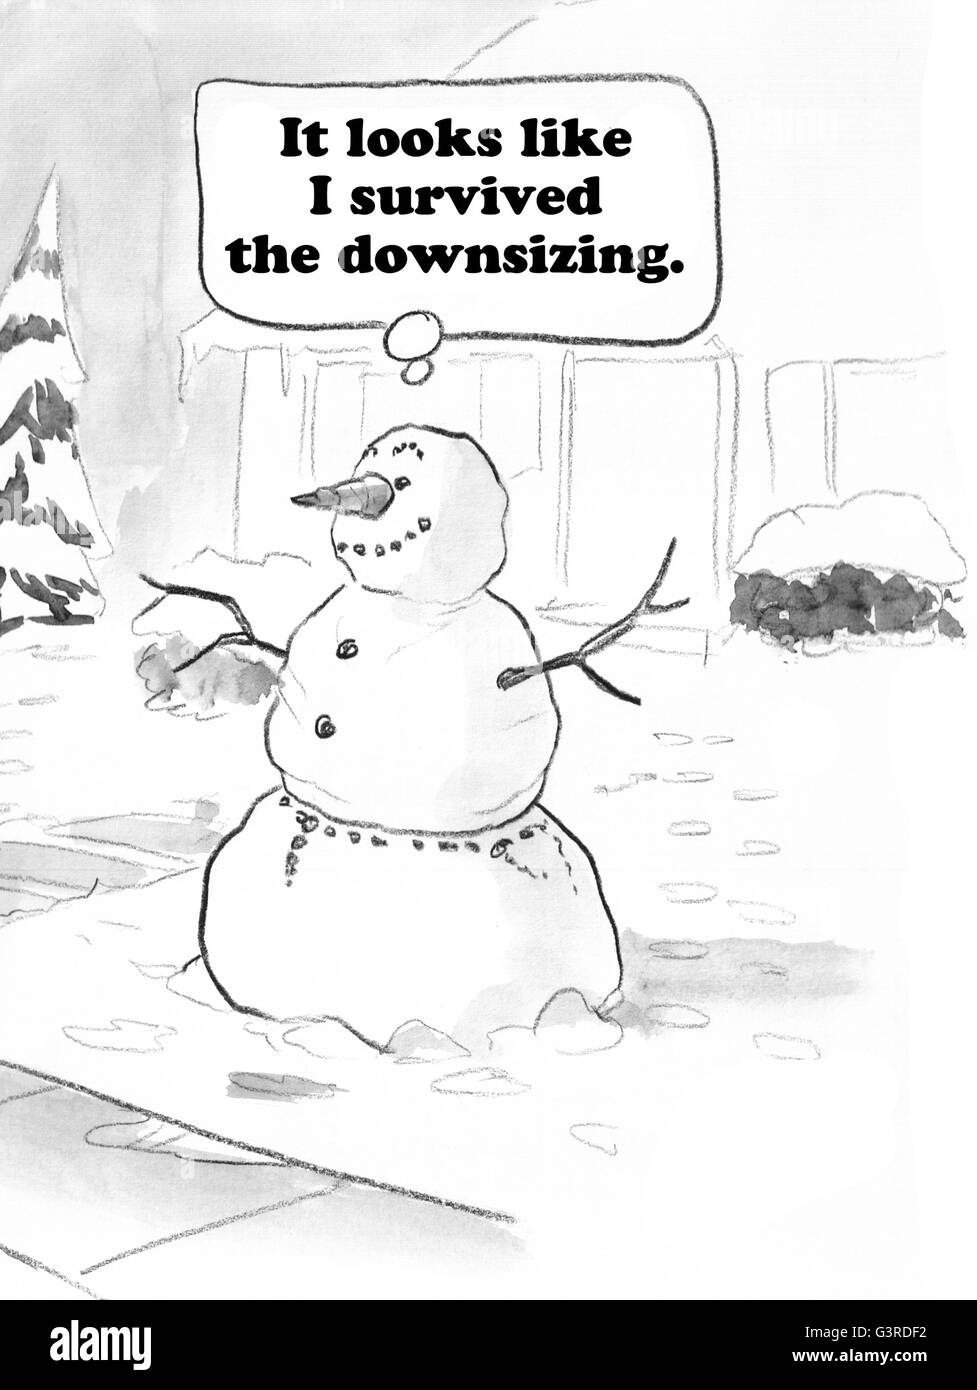 Cartoon über das "Downsizing" zu überleben. Stockfoto